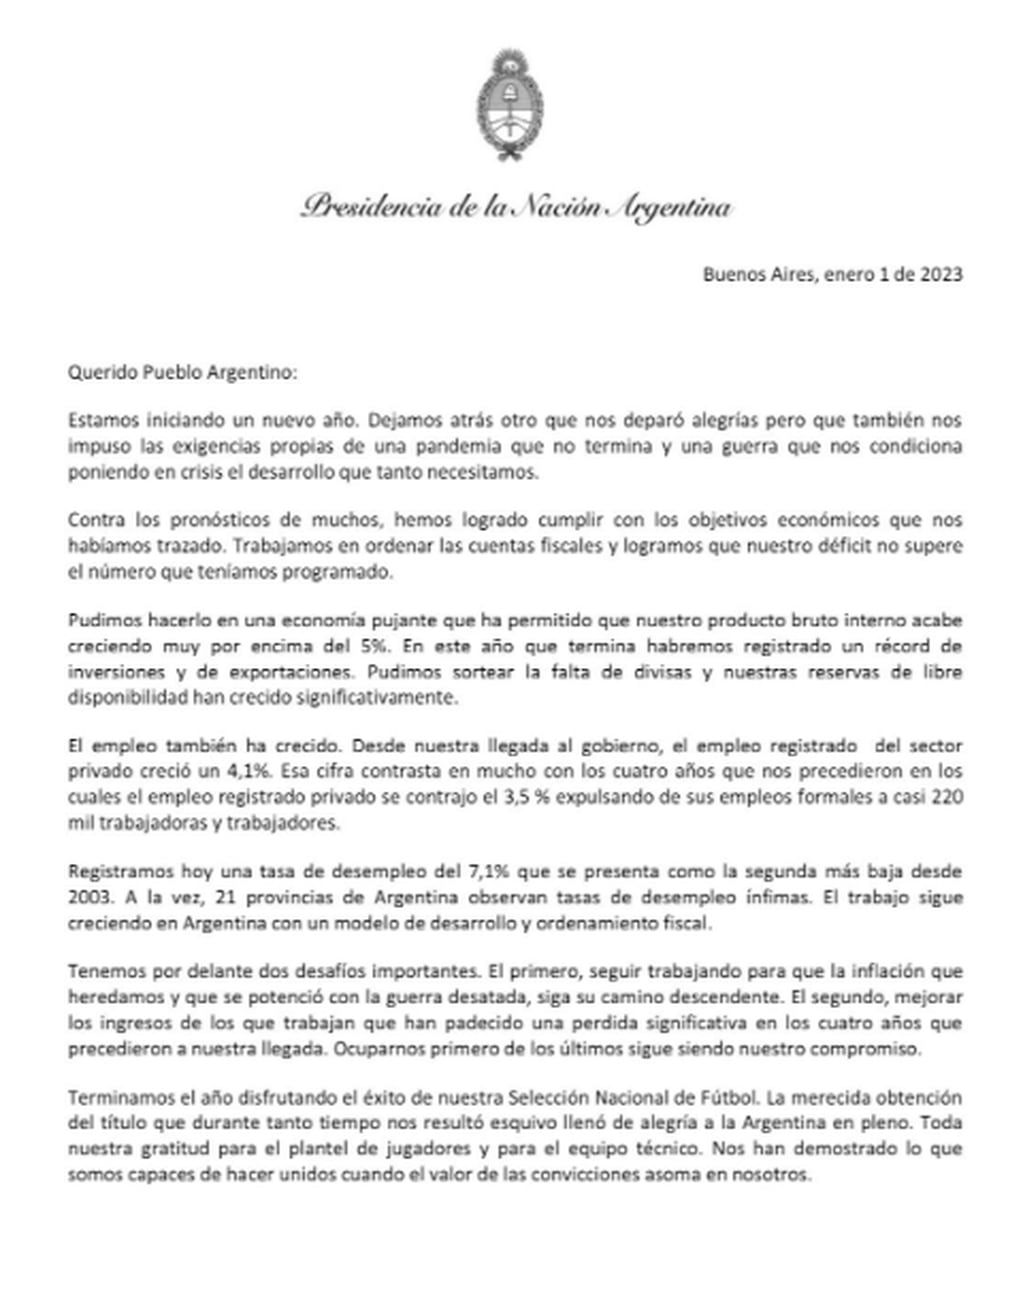 La extensa carta de Alberto Fernández sobre el juicio político contra el presidente de la Corte Suprema, Horacio Rosatti.